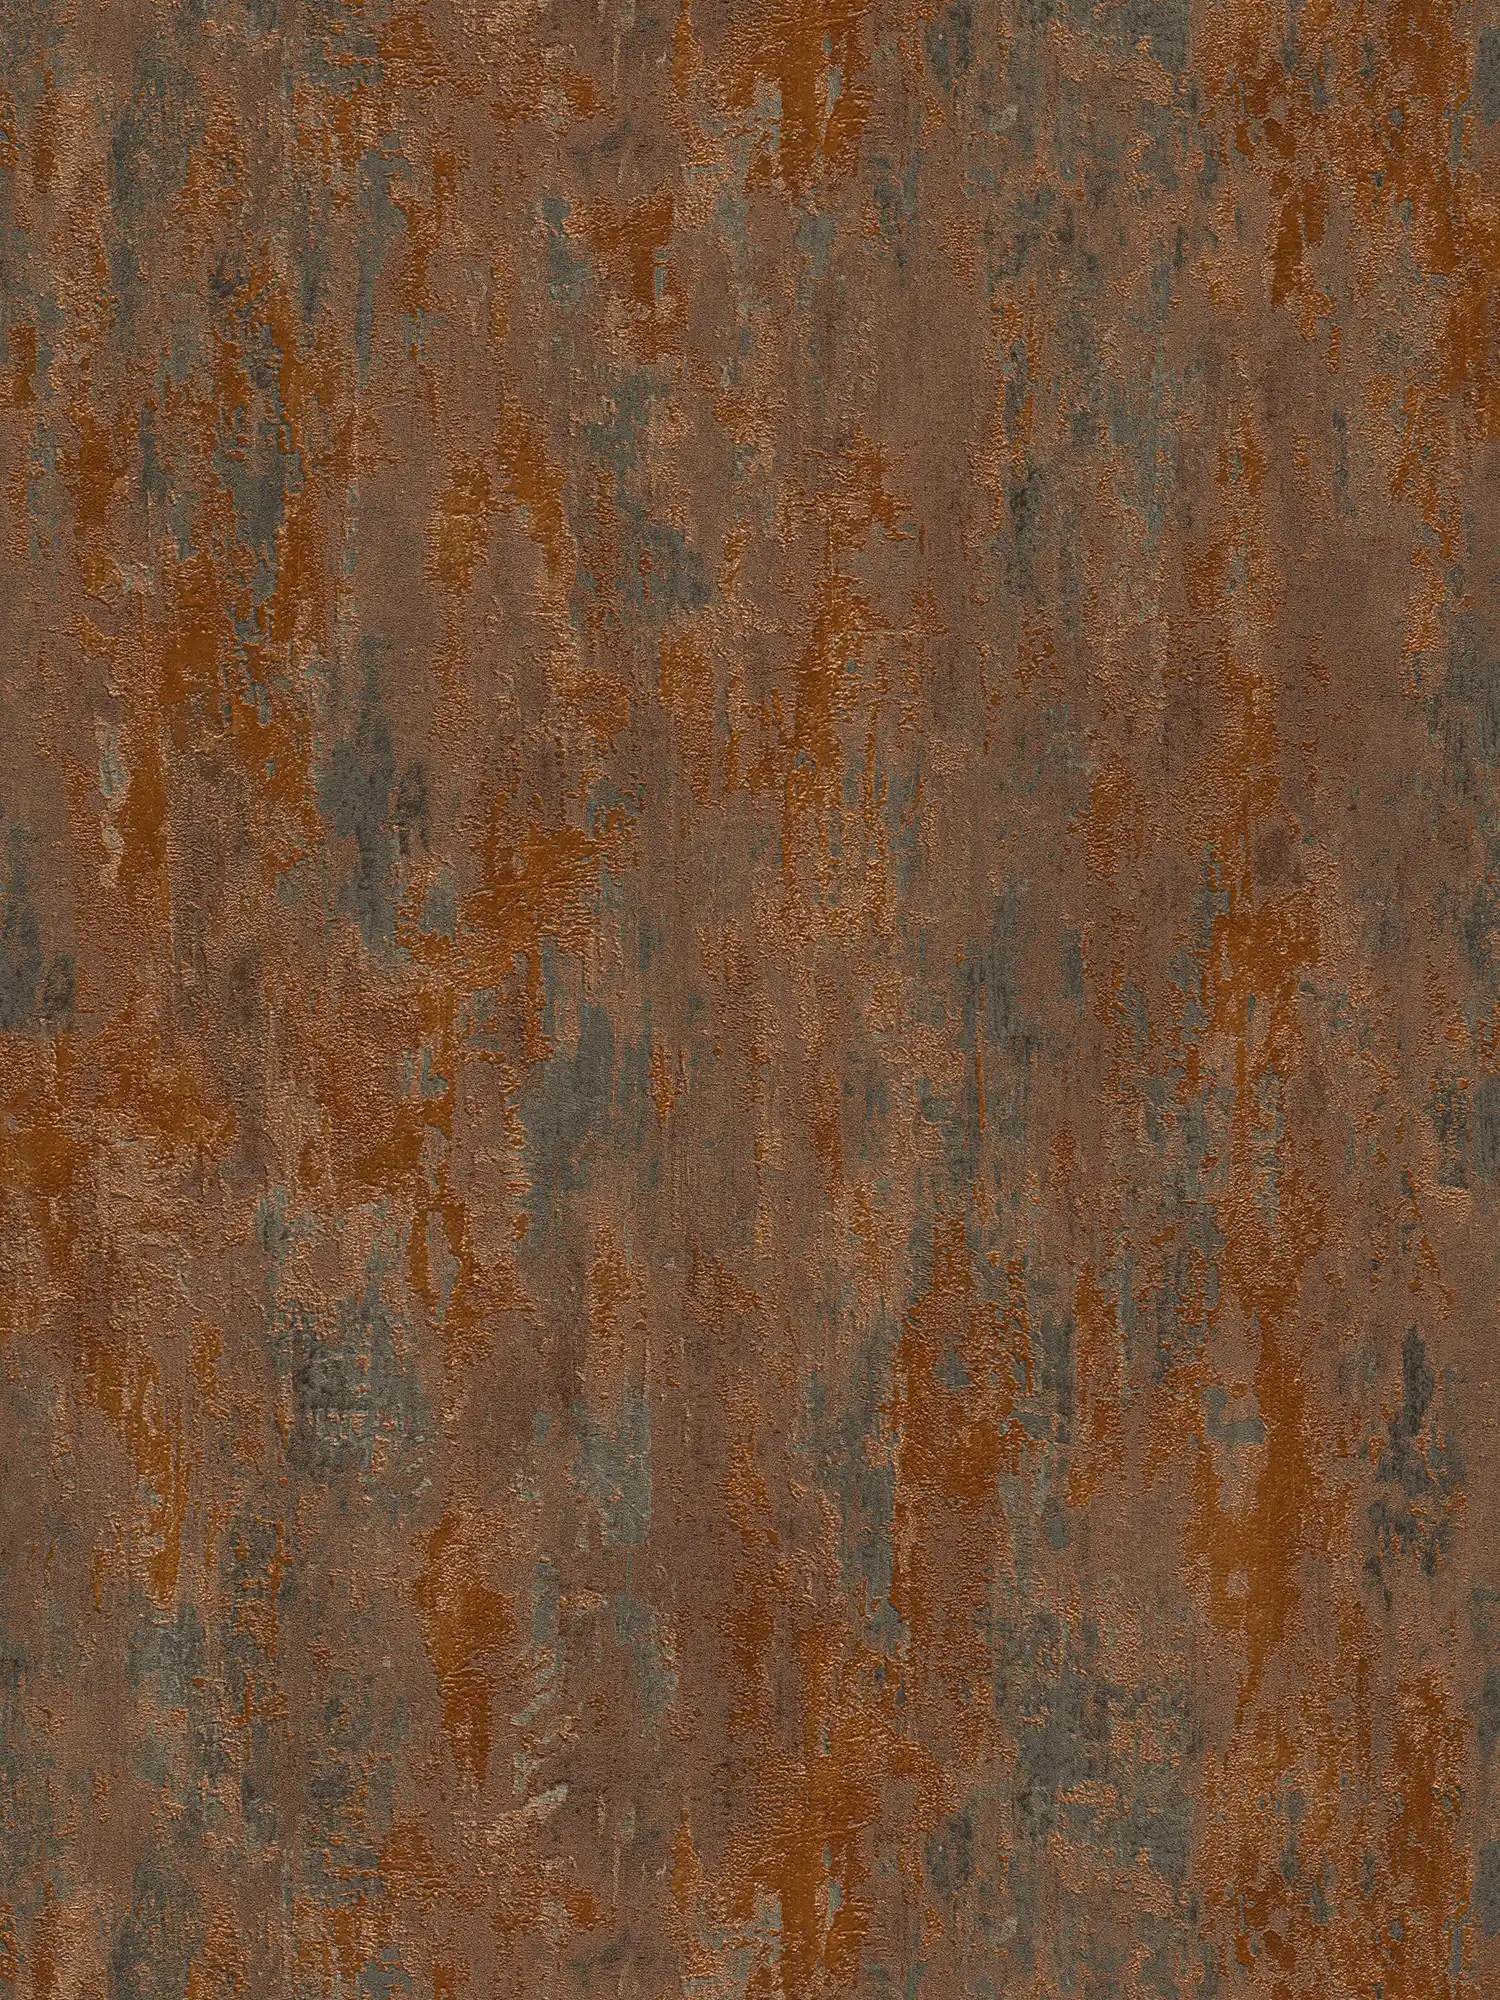         Papier peint rouille & effet métallique style industriel - orange, cuivre, marron
    